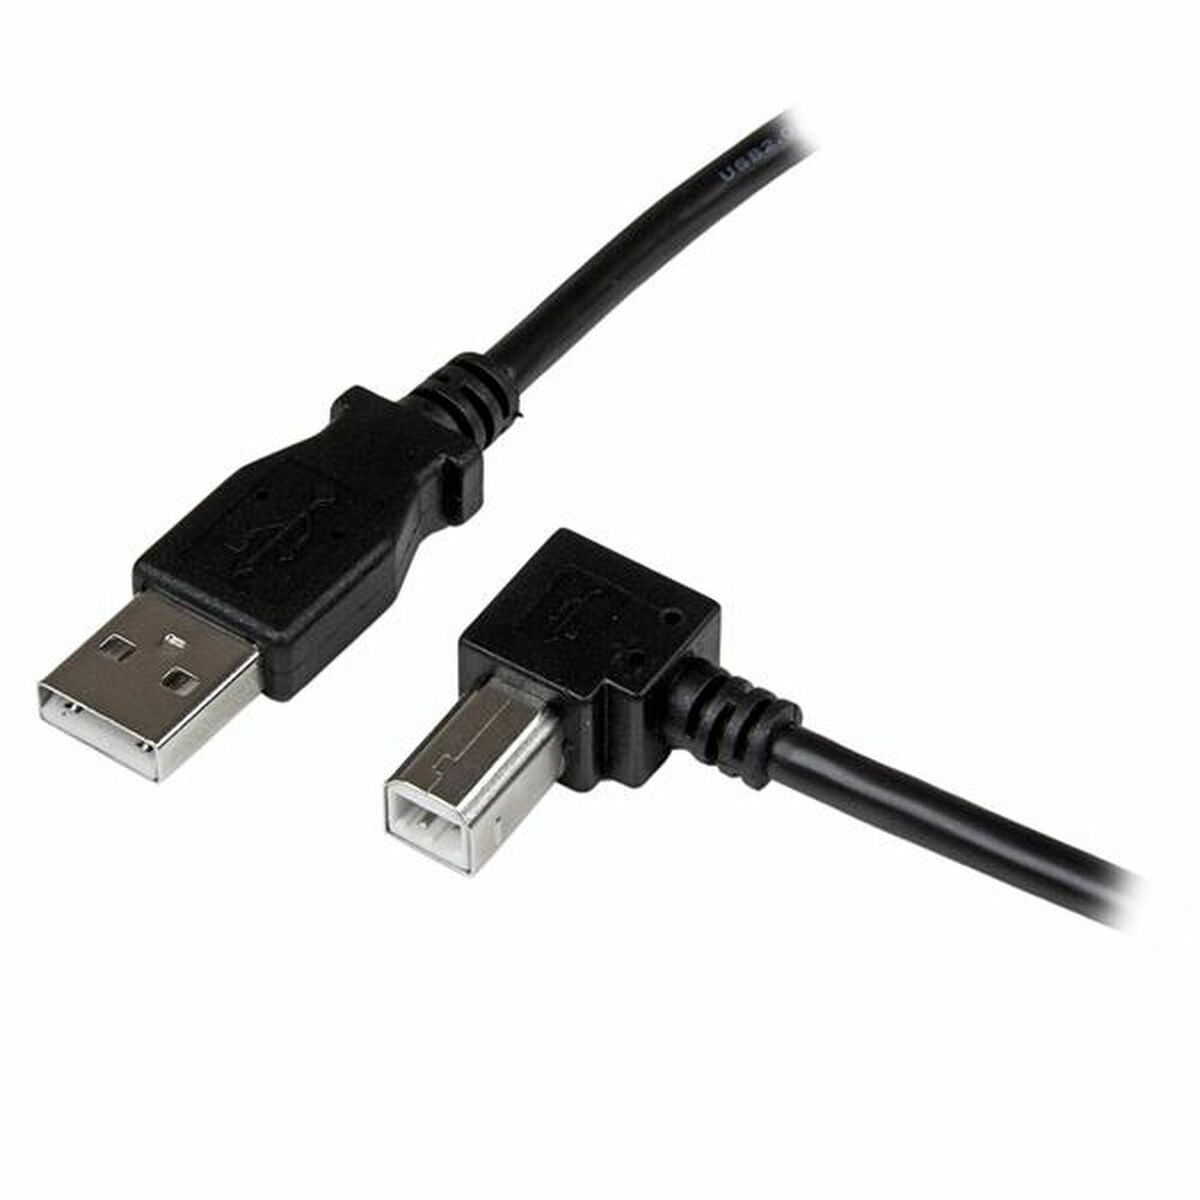 Cablu USB A la USB B Startech USBAB2MR             Negru